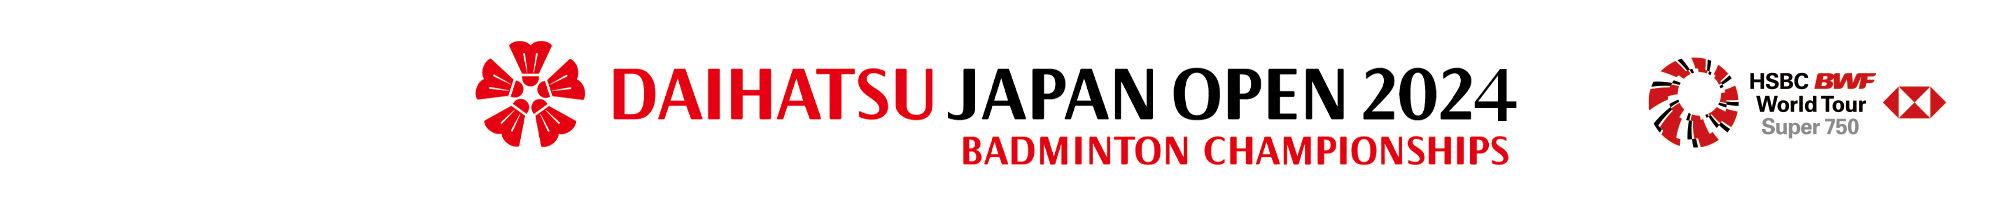 ダイハツジャパンオープン2024　公式サイト　DAIHATSU JAPAN OPEN 2024 Part of HSBC BWF World Tour Super 750  Official Web Site